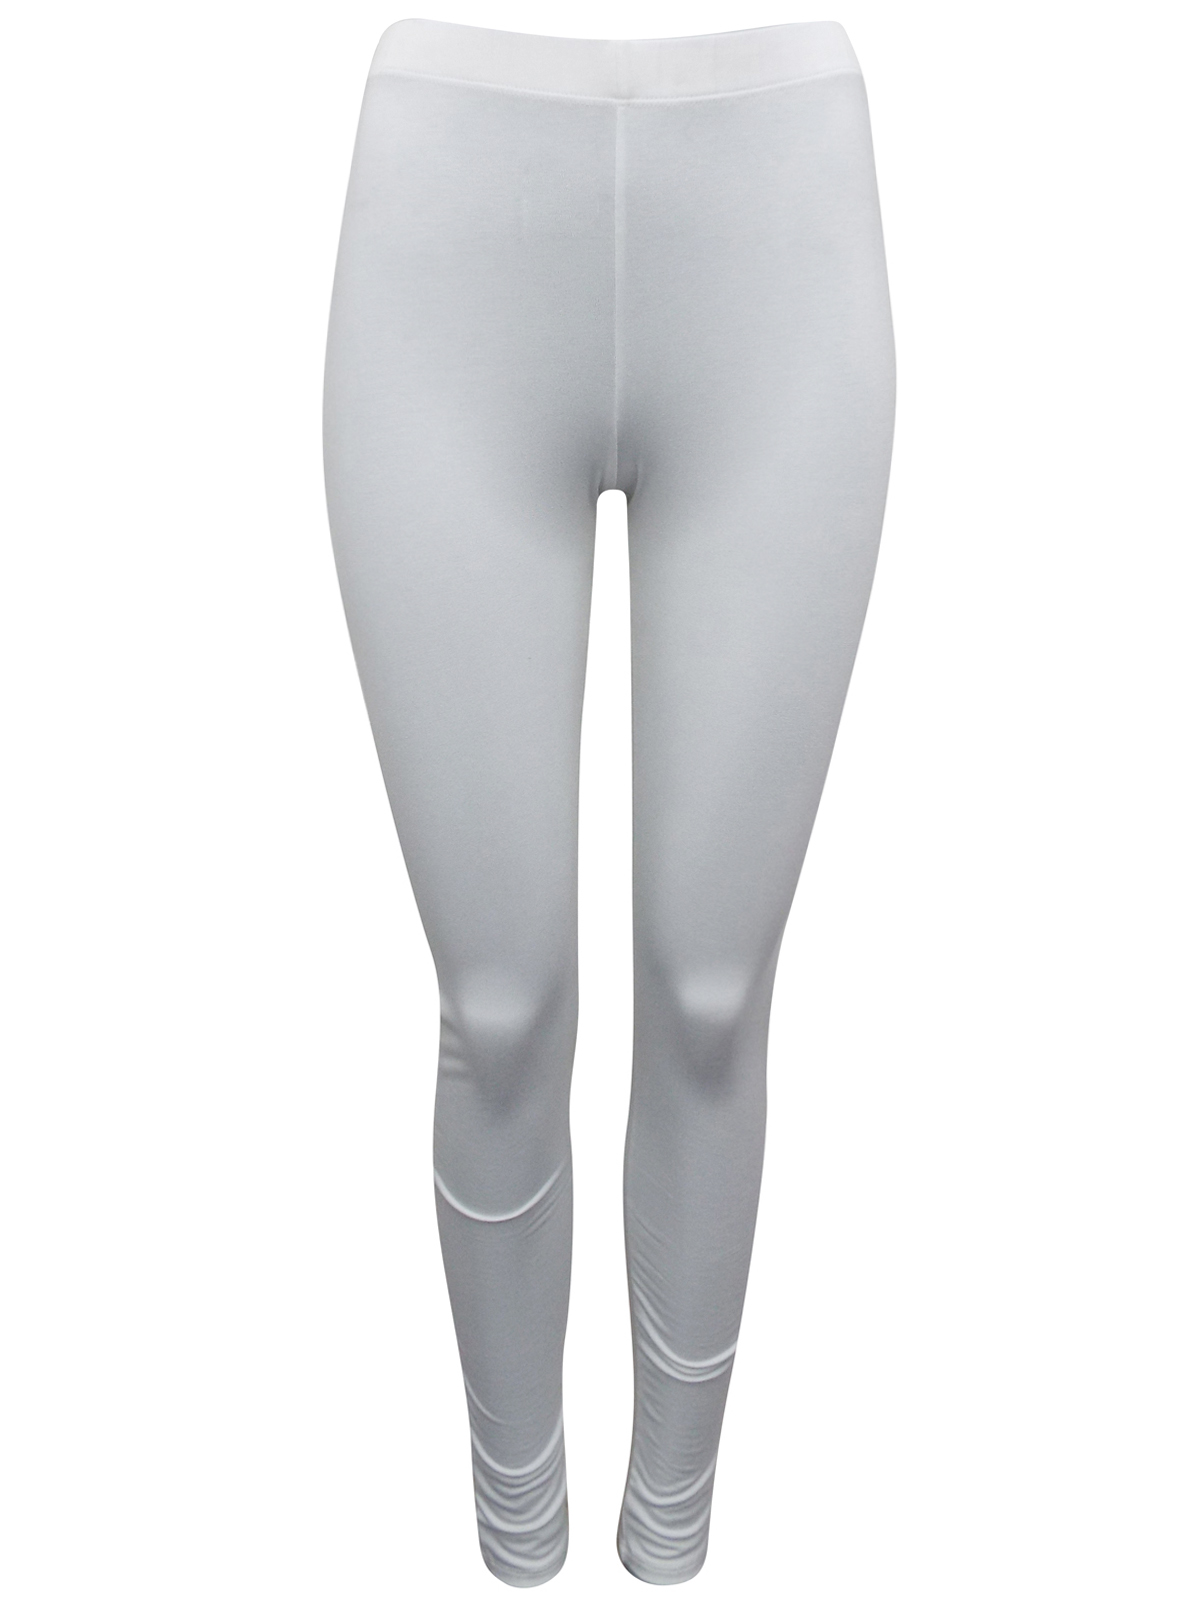 white full length leggings